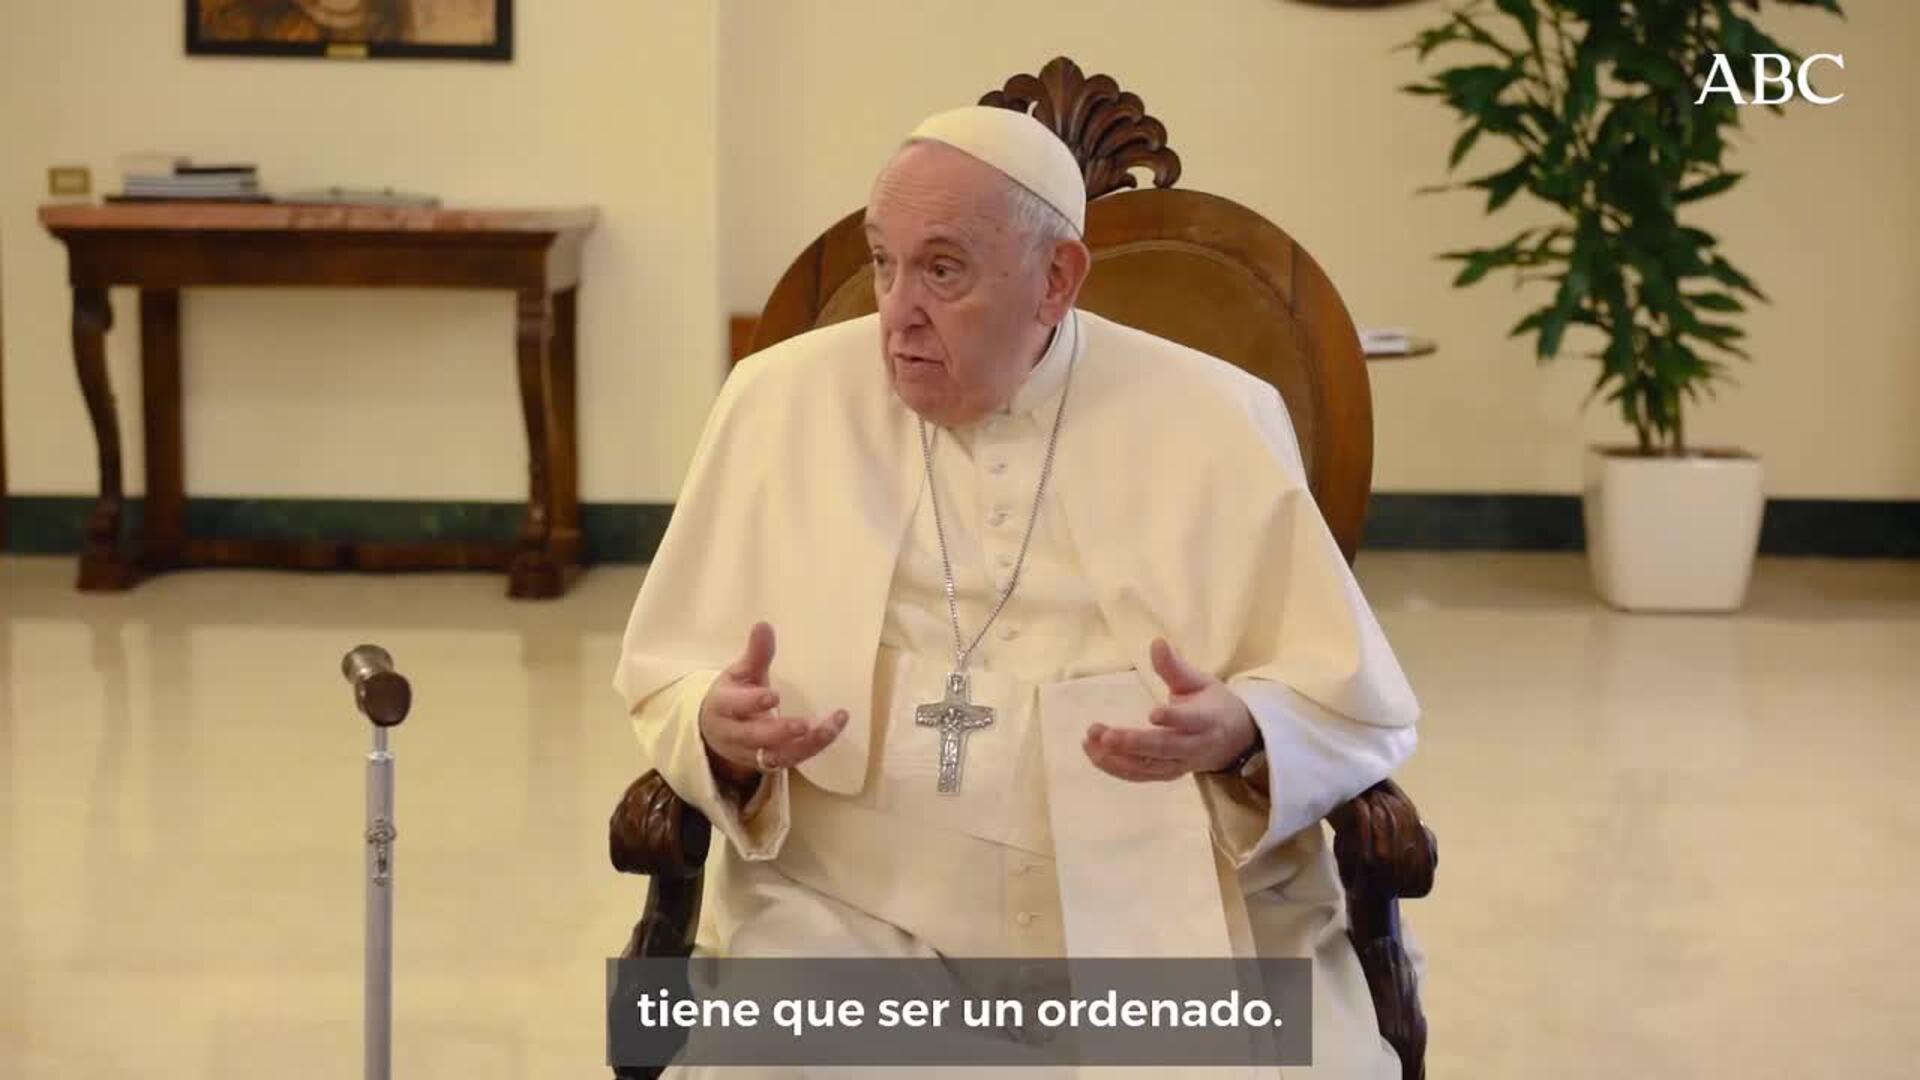 El Papa Francisco durante la entrevista, que tuvo lugar en su residencia en Casa Santa Marta.